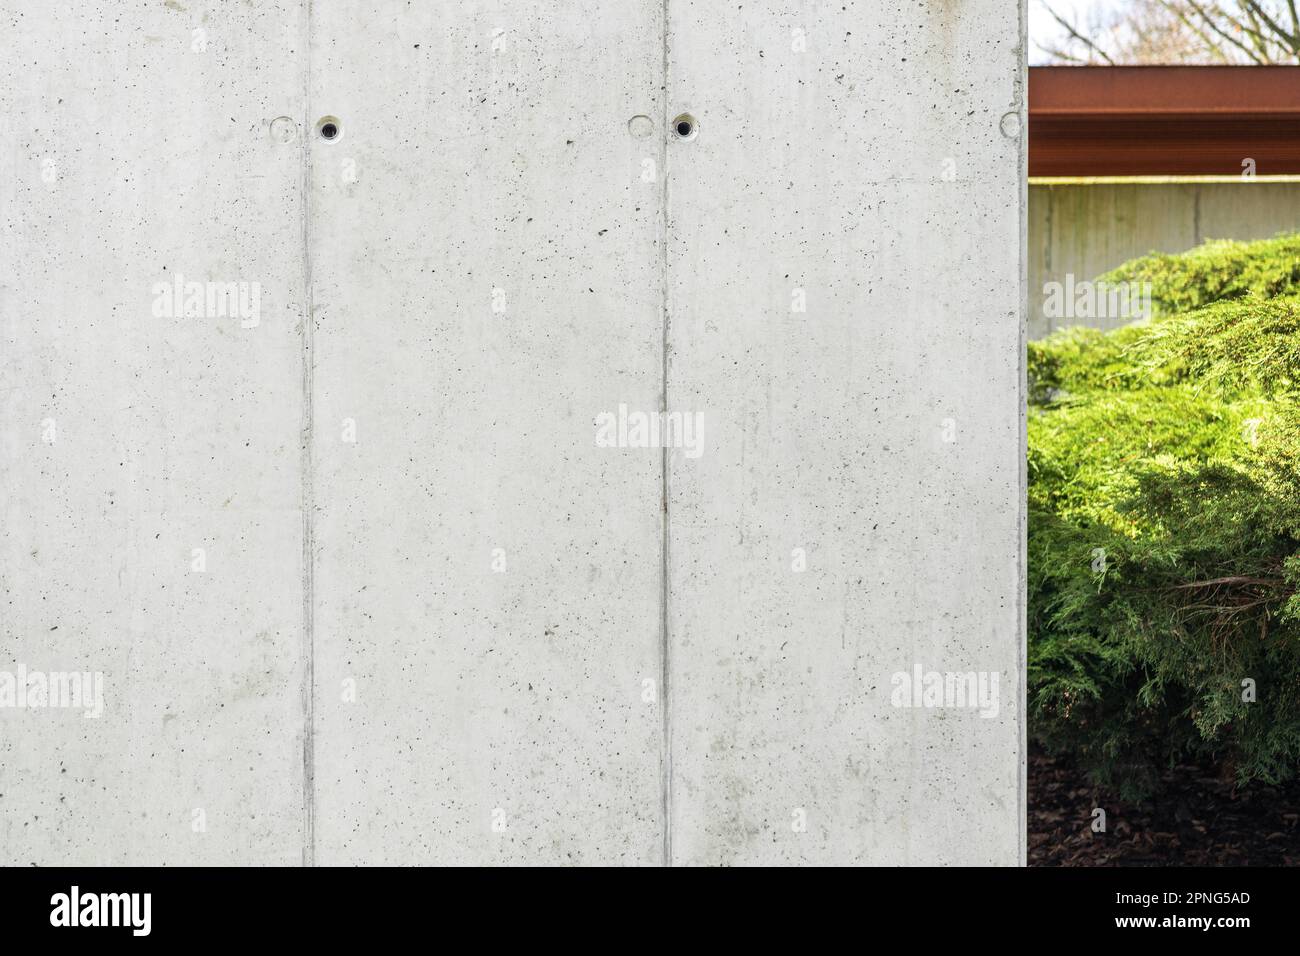 Cassaforma architettonica calcestruzzo. Cemento, parete grigia con fori visibili per cassaforma. Cespugli verdi sullo sfondo Foto Stock